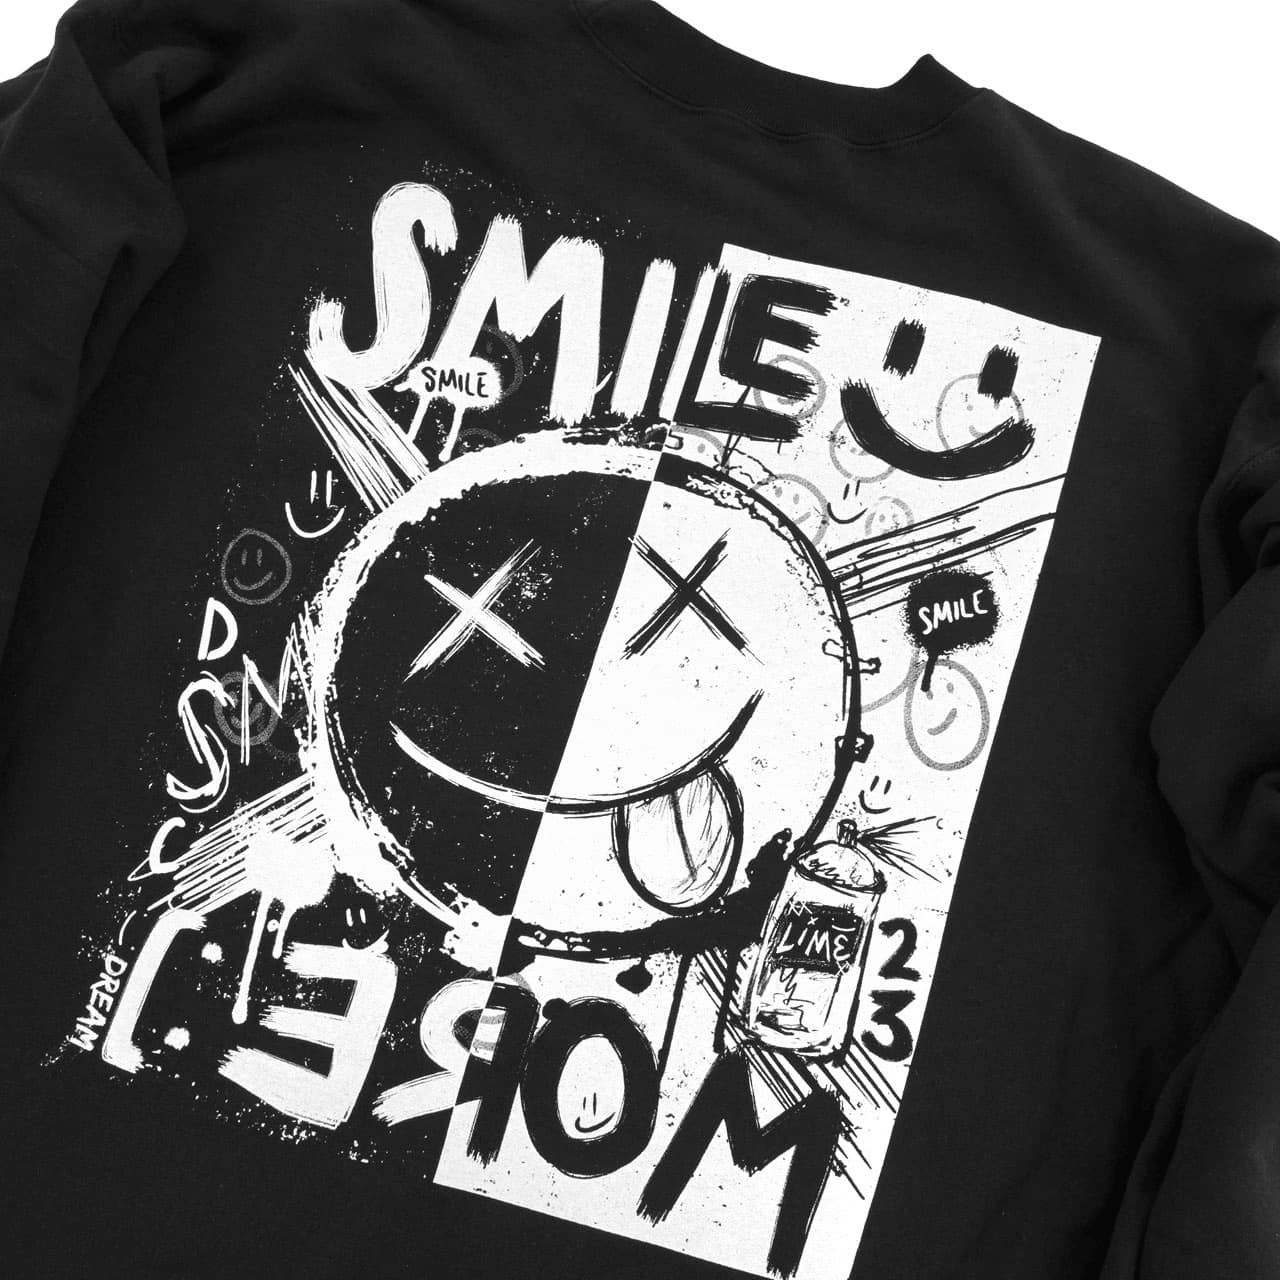 January MEMBERS ONLY Smile More Premium Sweatshirt - DREAM